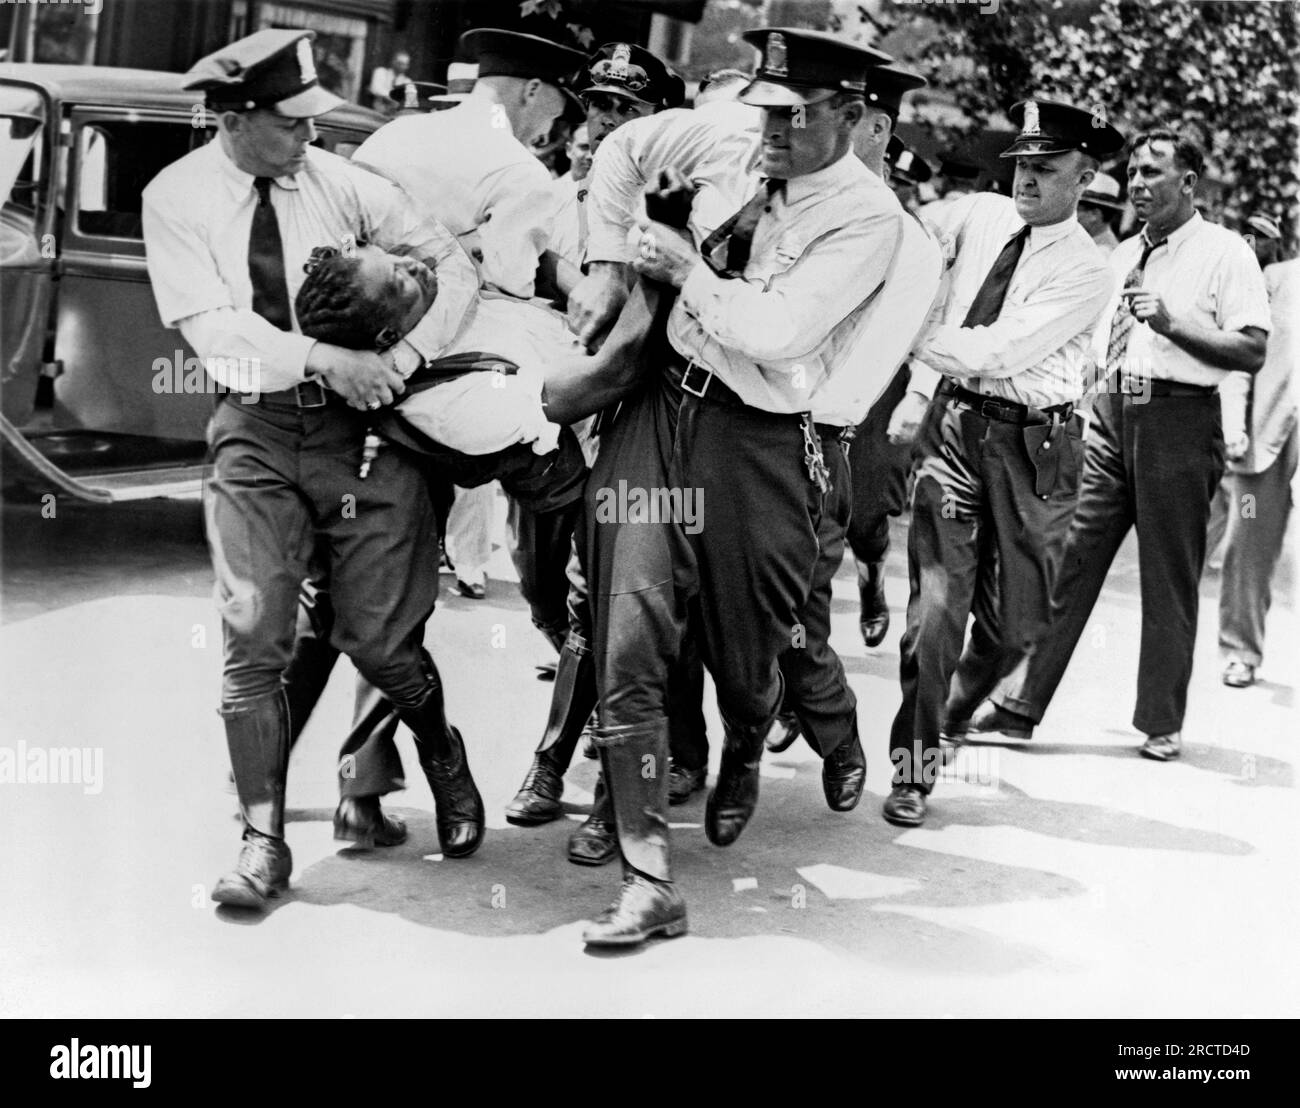 Washington, D.C.: 28. Juli 1932. Polizisten, die einen Veteranen aus dem 1. Weltkrieg, Mitglied der Bonus Expeditionary Forces, aus einem Gebäude auf der Pennsylvania Avenue während der Unruhen trugen, die durch einen Räumungsbescheid ausgelöst wurden. Stockfoto